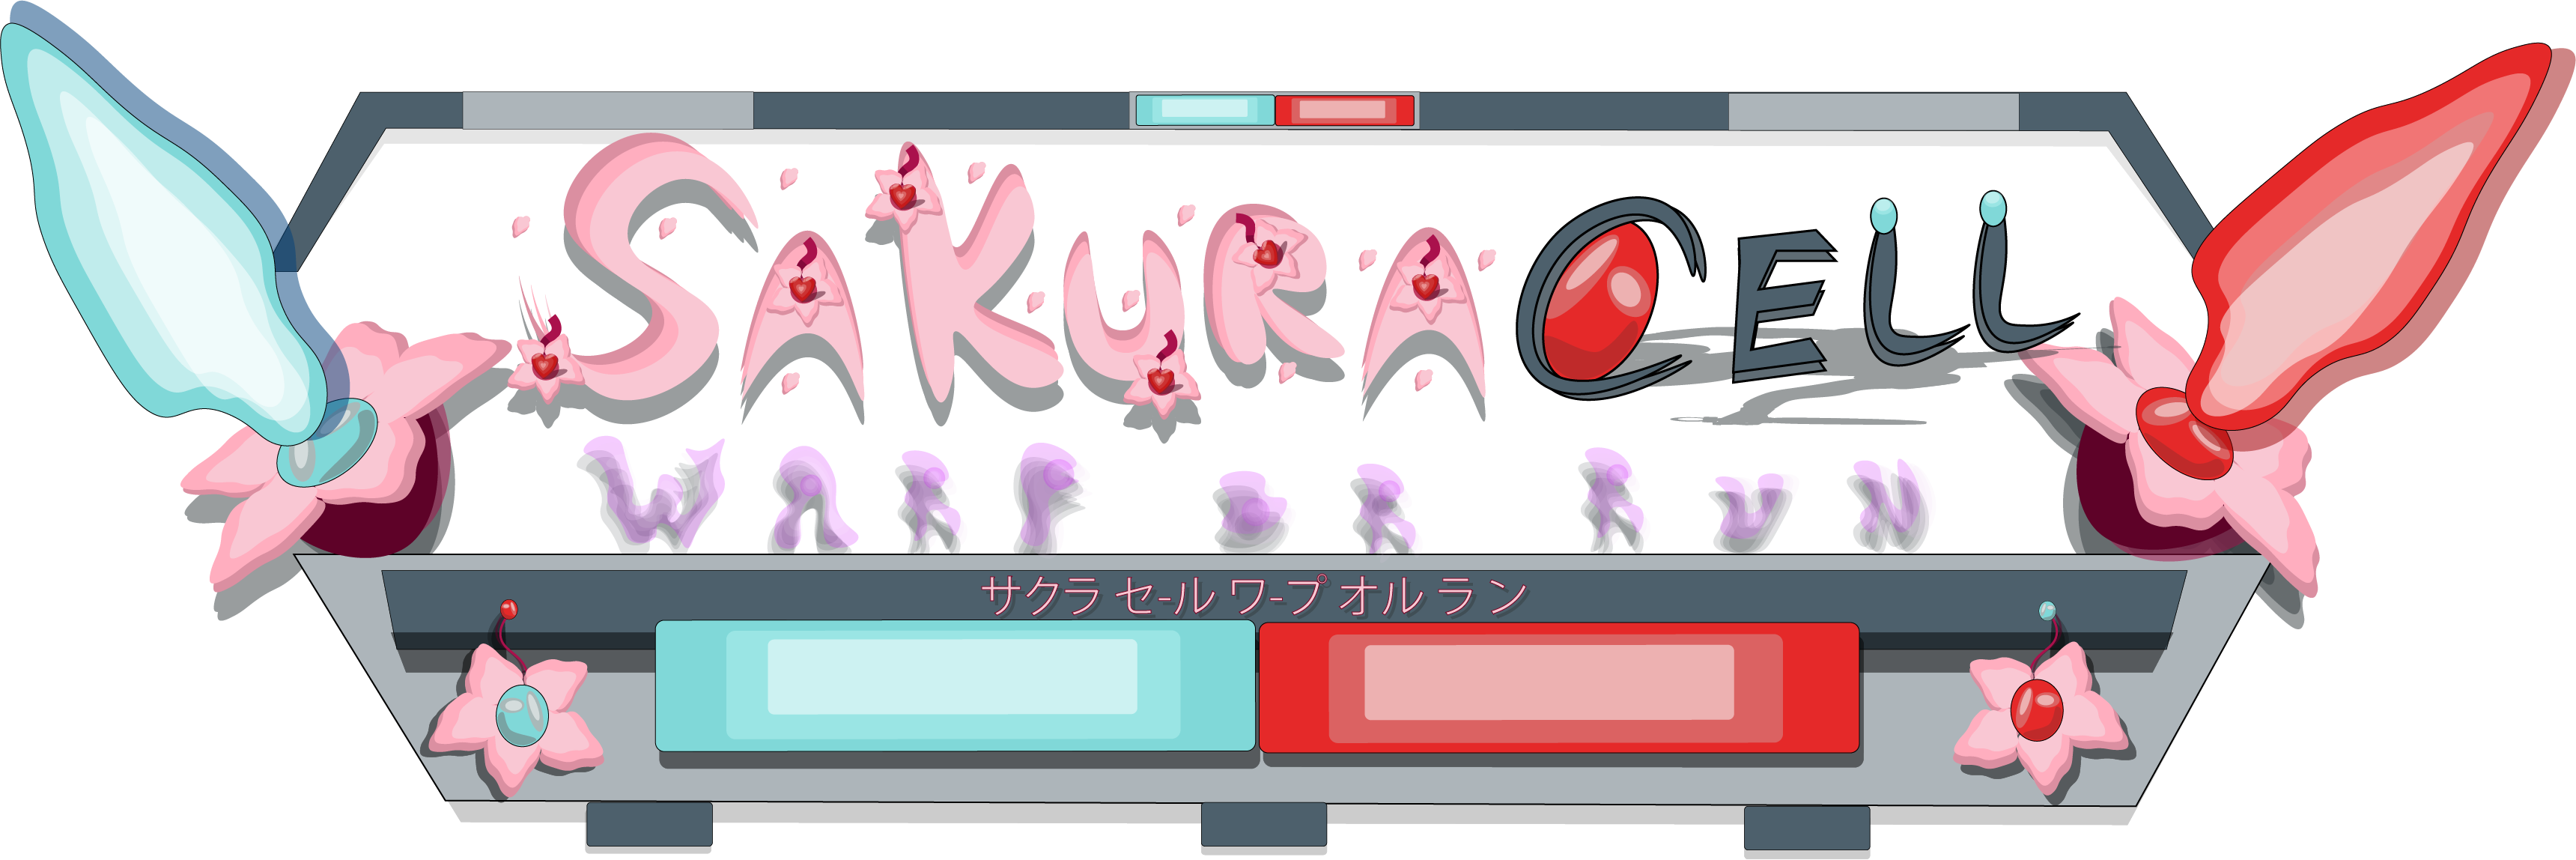 Sakura Cell Warp or Run (サクラ セ-ル ワ-プ オル ラ ン)